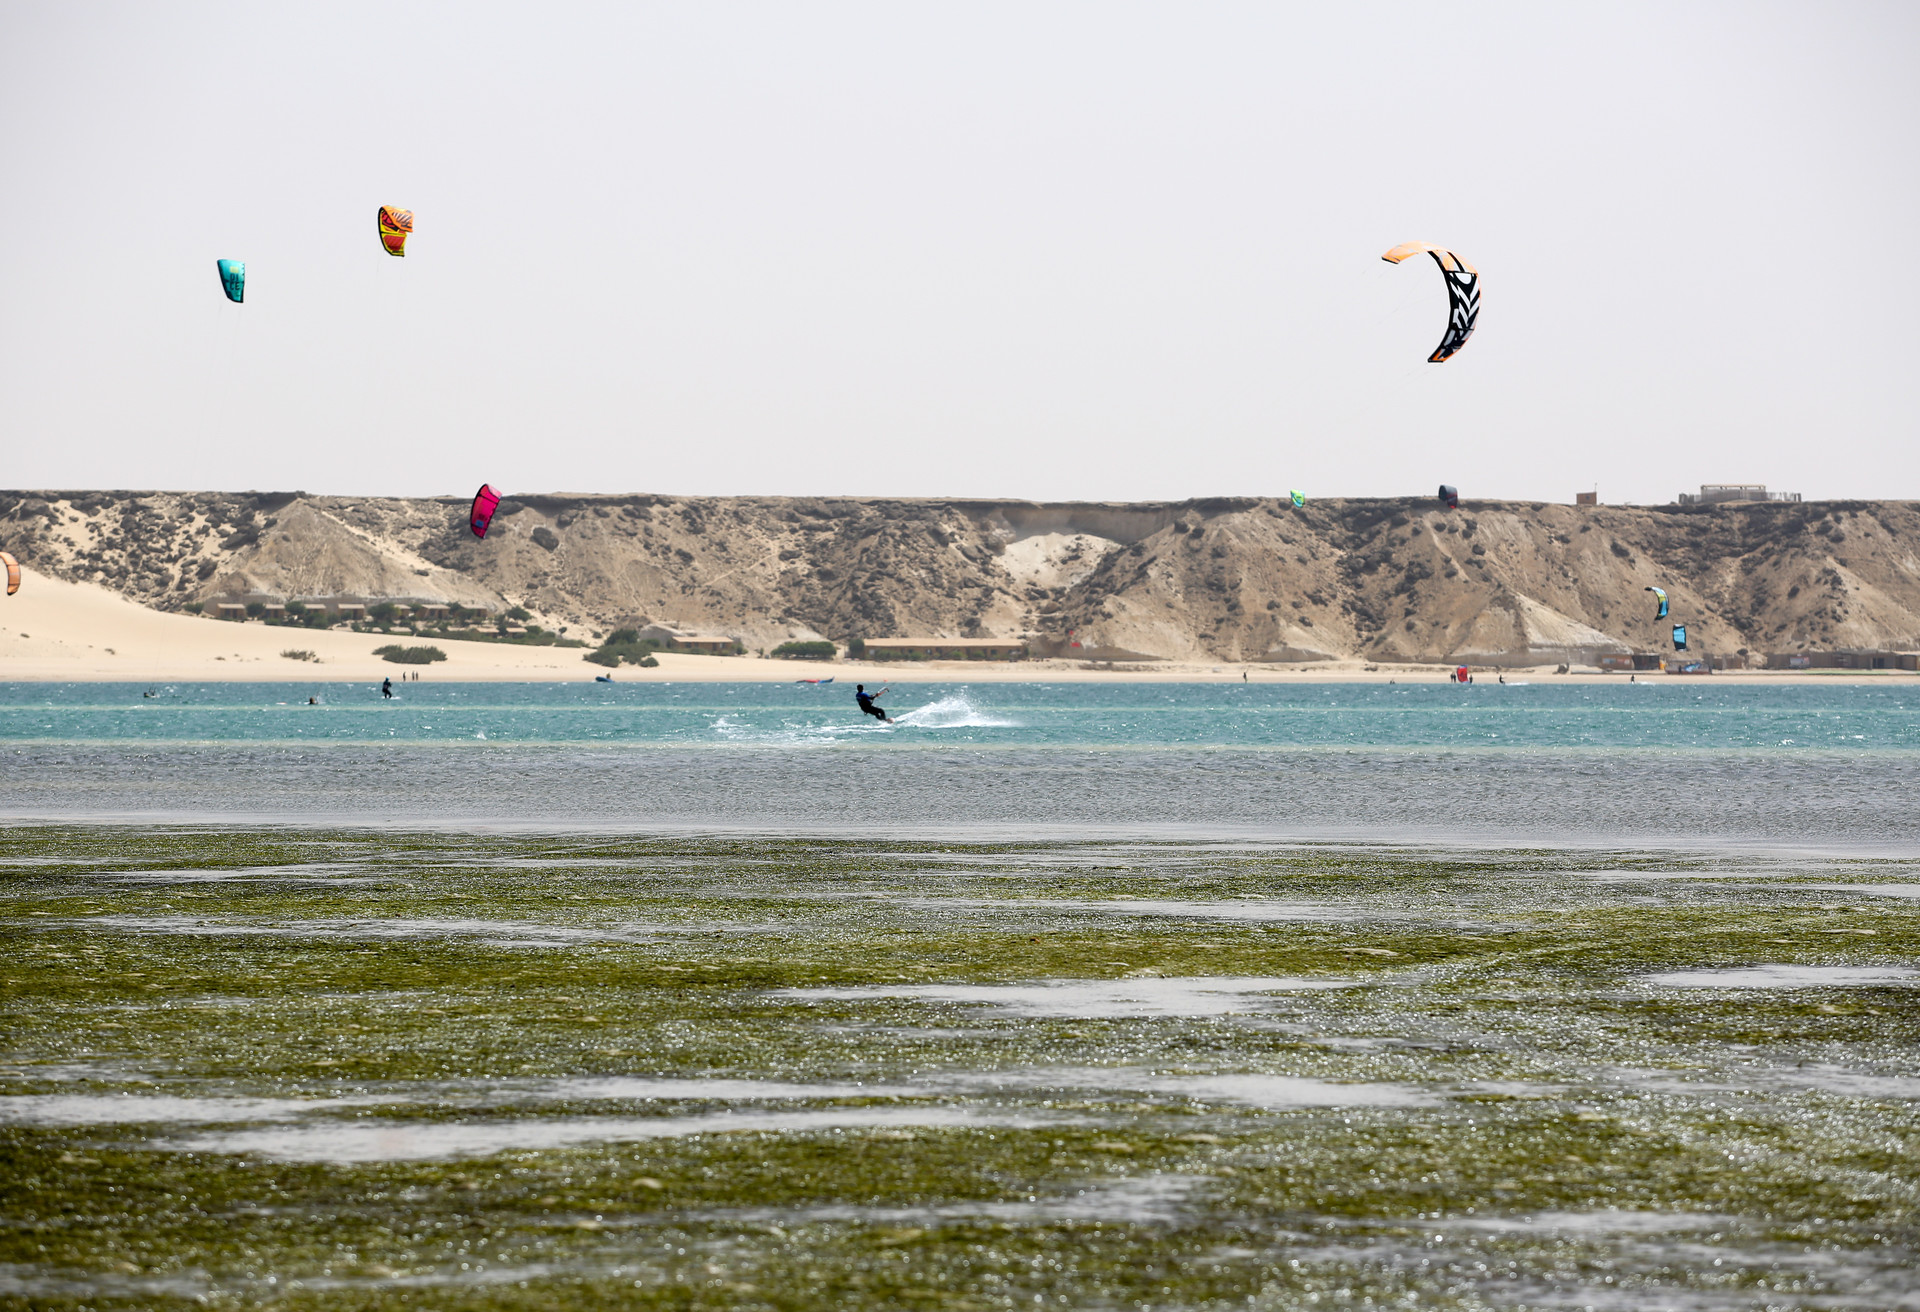 Kitesurfen in de Sahara in Dakhla, gelegen aan de Marokkaanse Atlantische kust